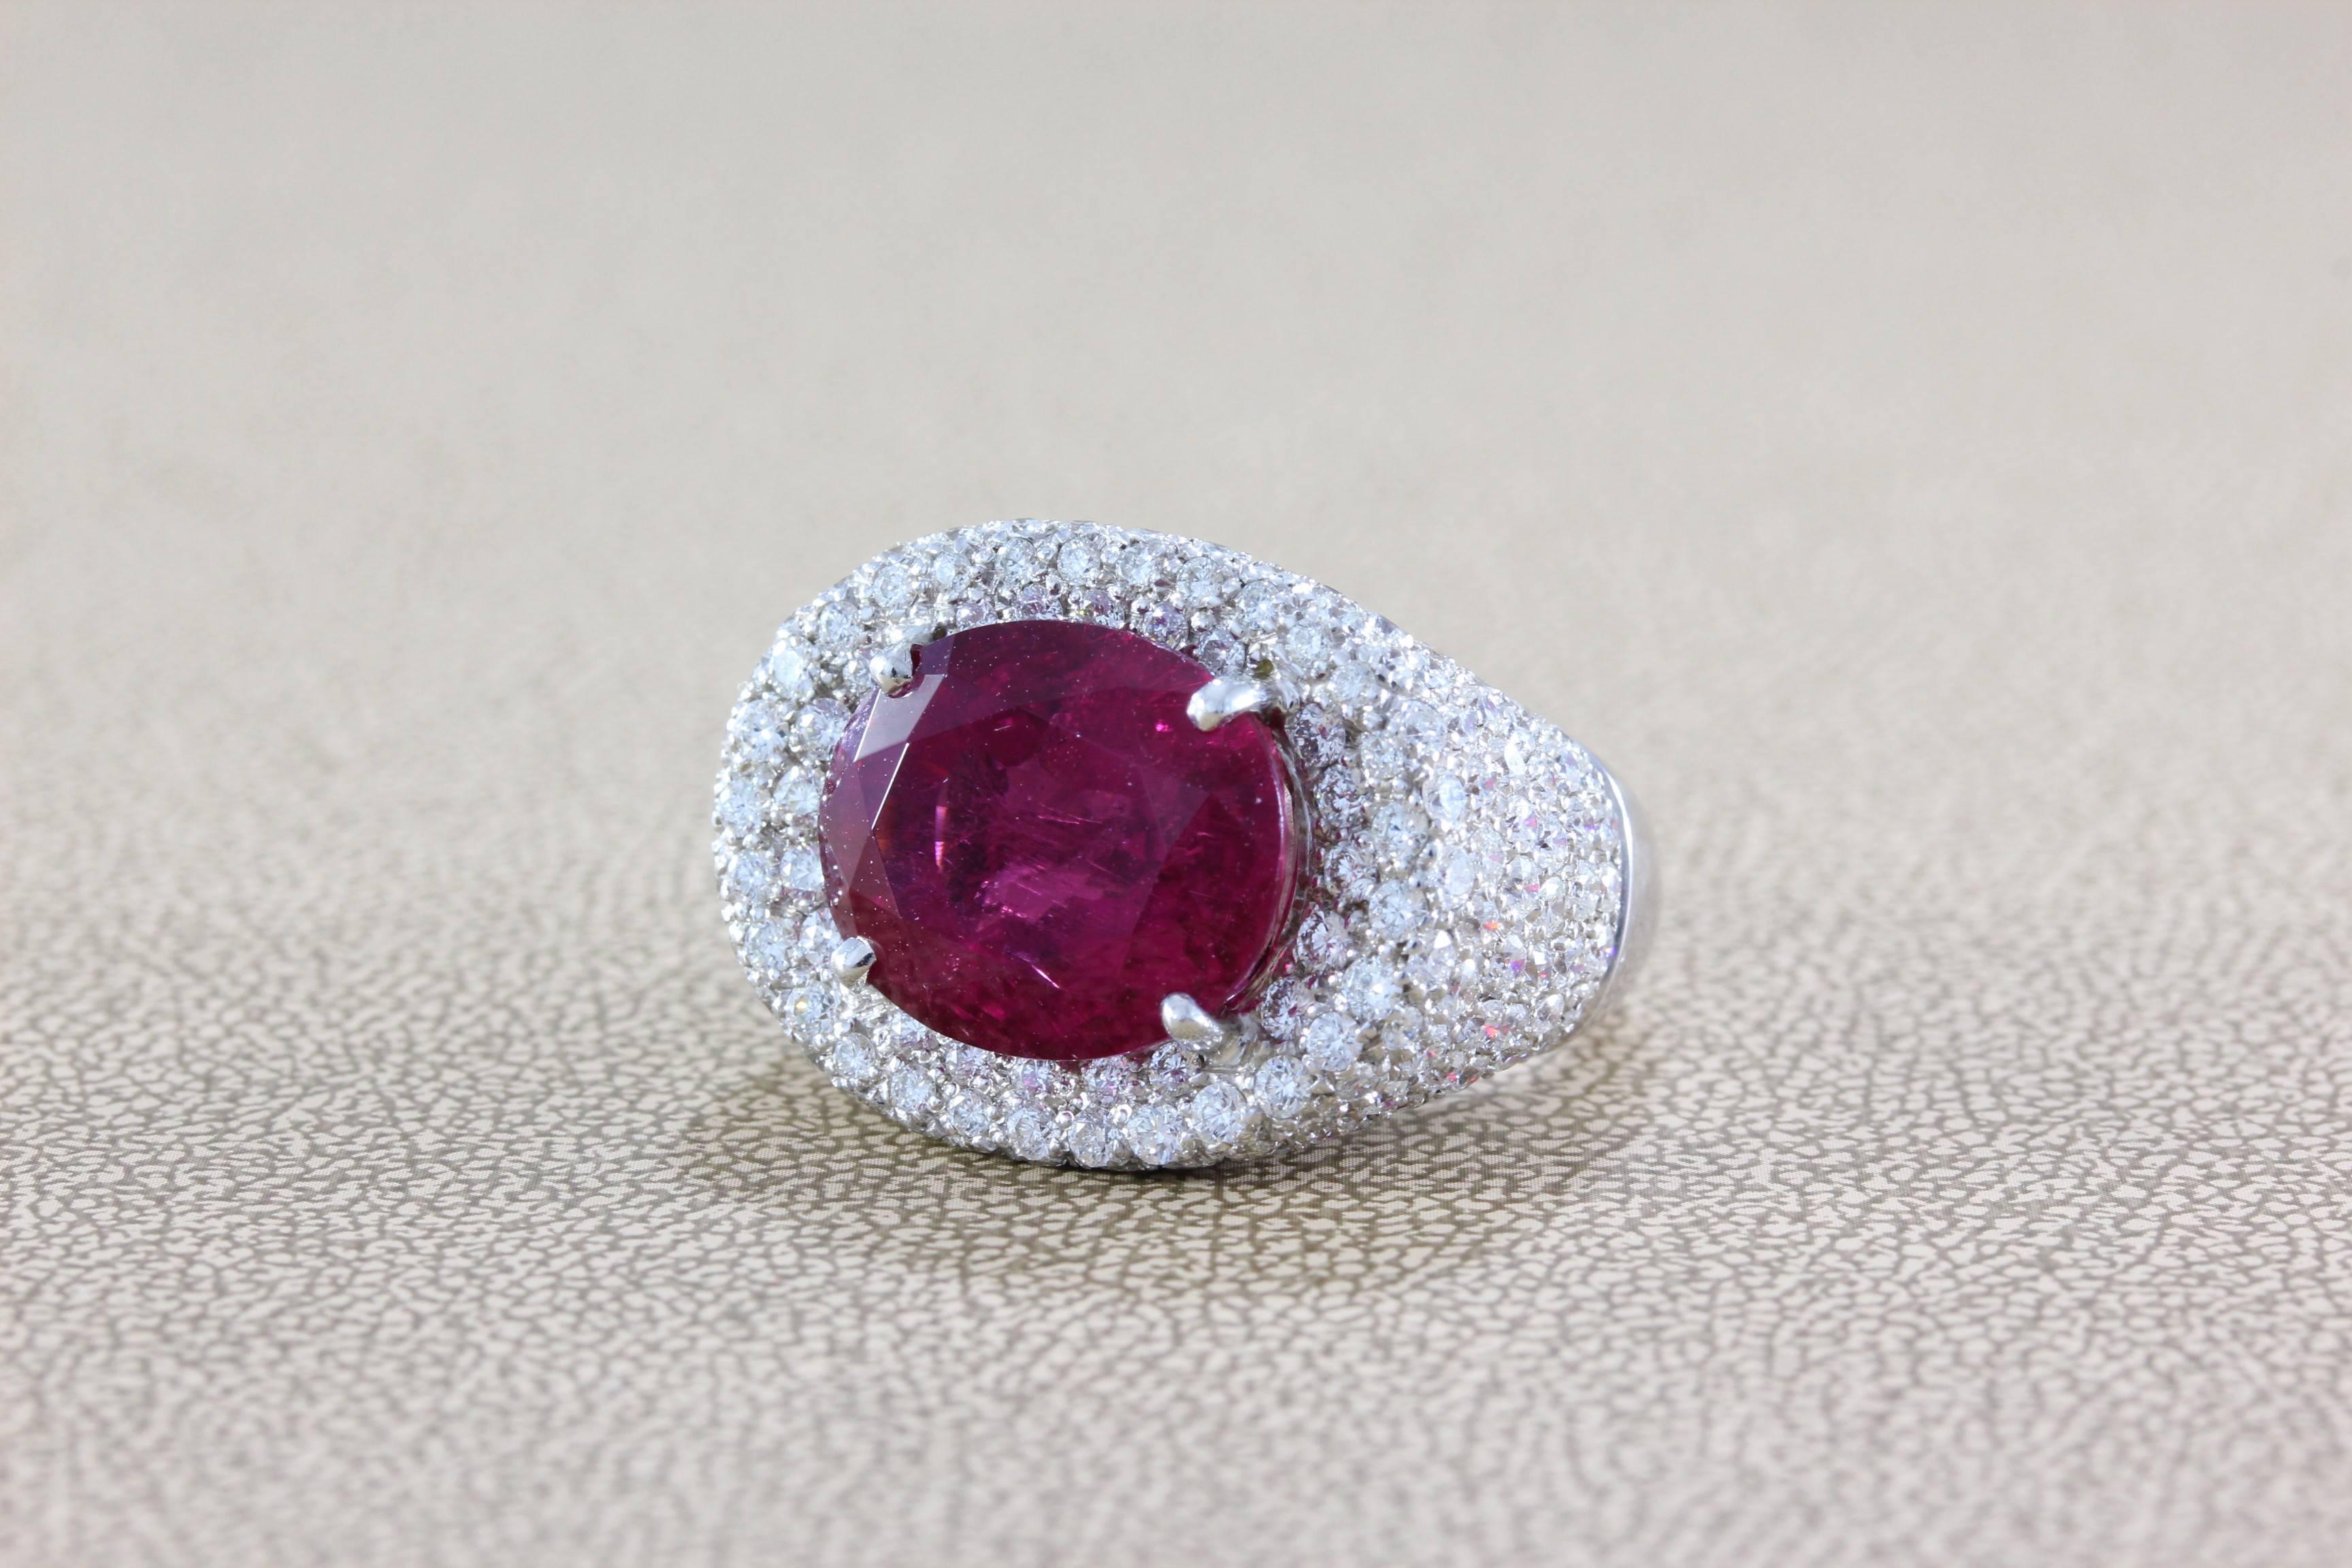 Ein Ring mit einem prächtigen Rubellit-Turmalin mit einem Gewicht von 12,16 Karat. Dieser Edelstein hat eine prächtige, leuchtend himbeerrote Farbe, die es mit den schönsten Rubinen aufnehmen kann. Der Edelstein wird von über 4 Karat Diamanten im